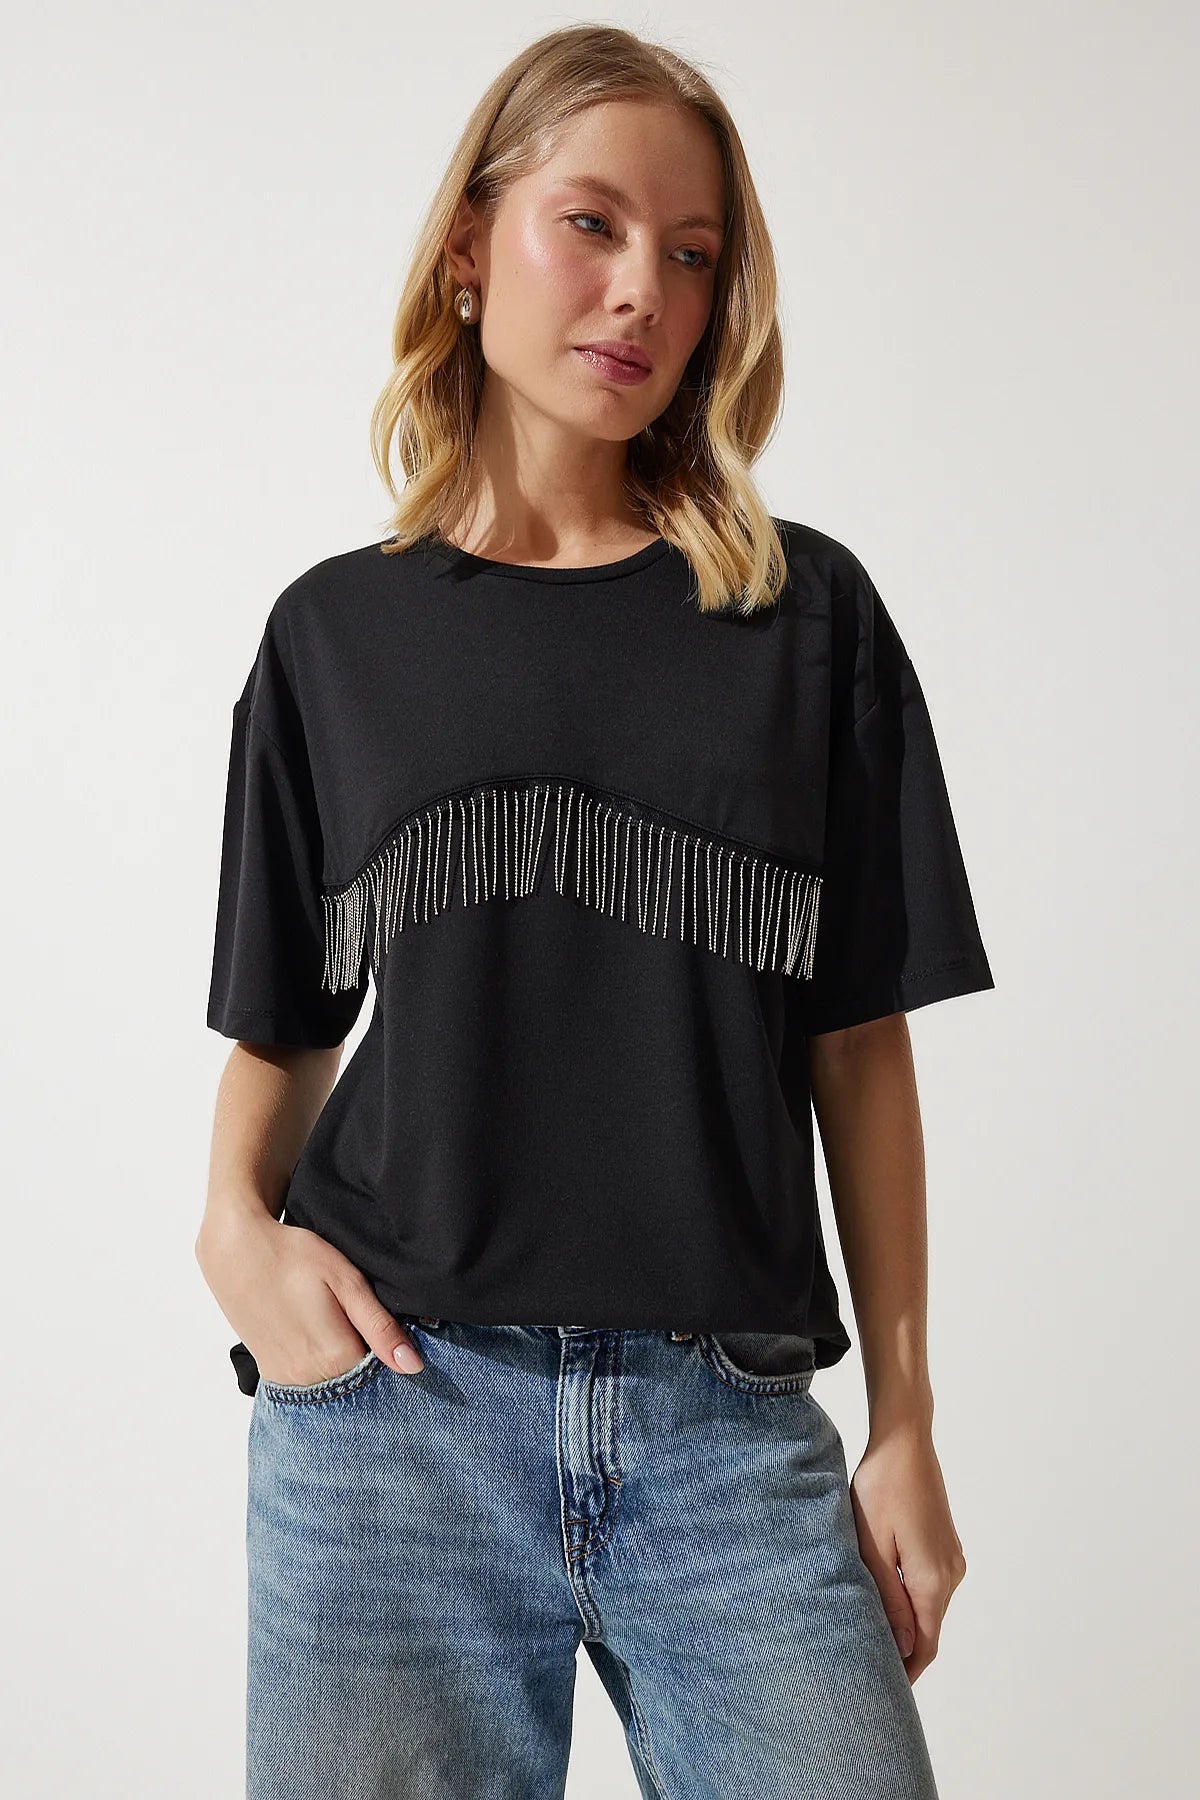 Women's Black Chain Detailed Oversize Knitted T-Shirt - Lebbse